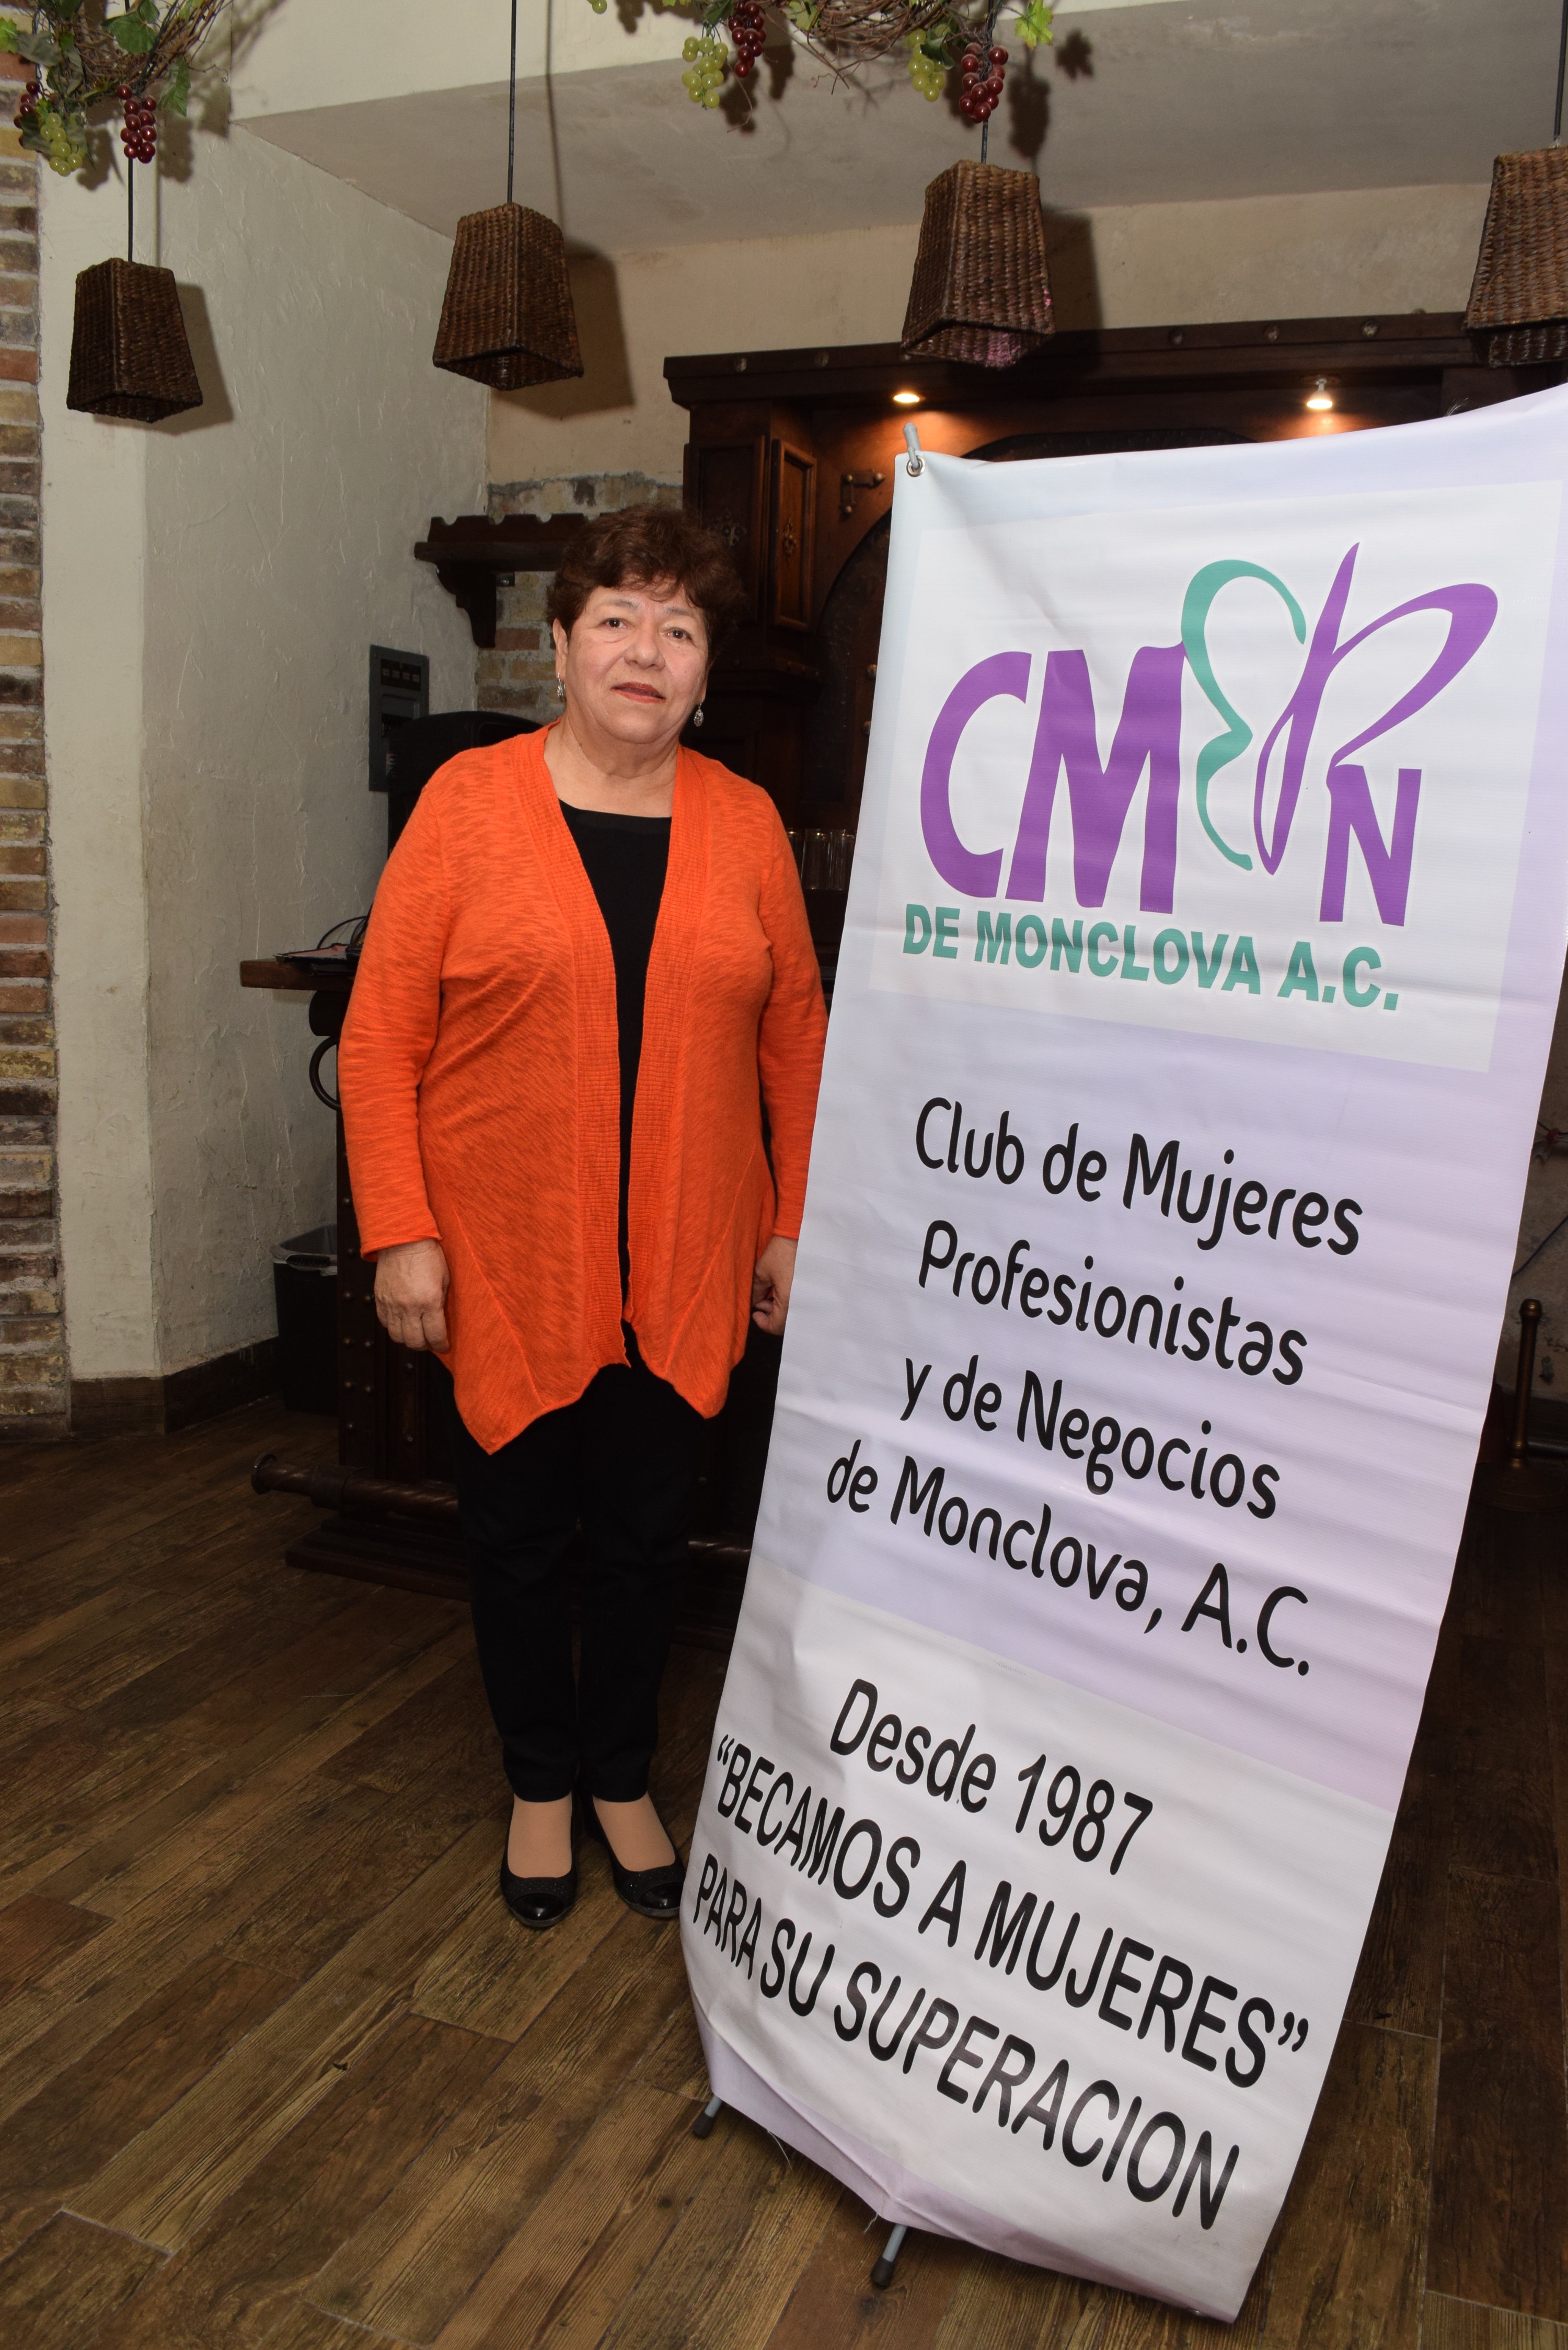 CLUB DE MUJERES PROFESIONISTAS Y DE NEGOCIOS DE MONCLOVA